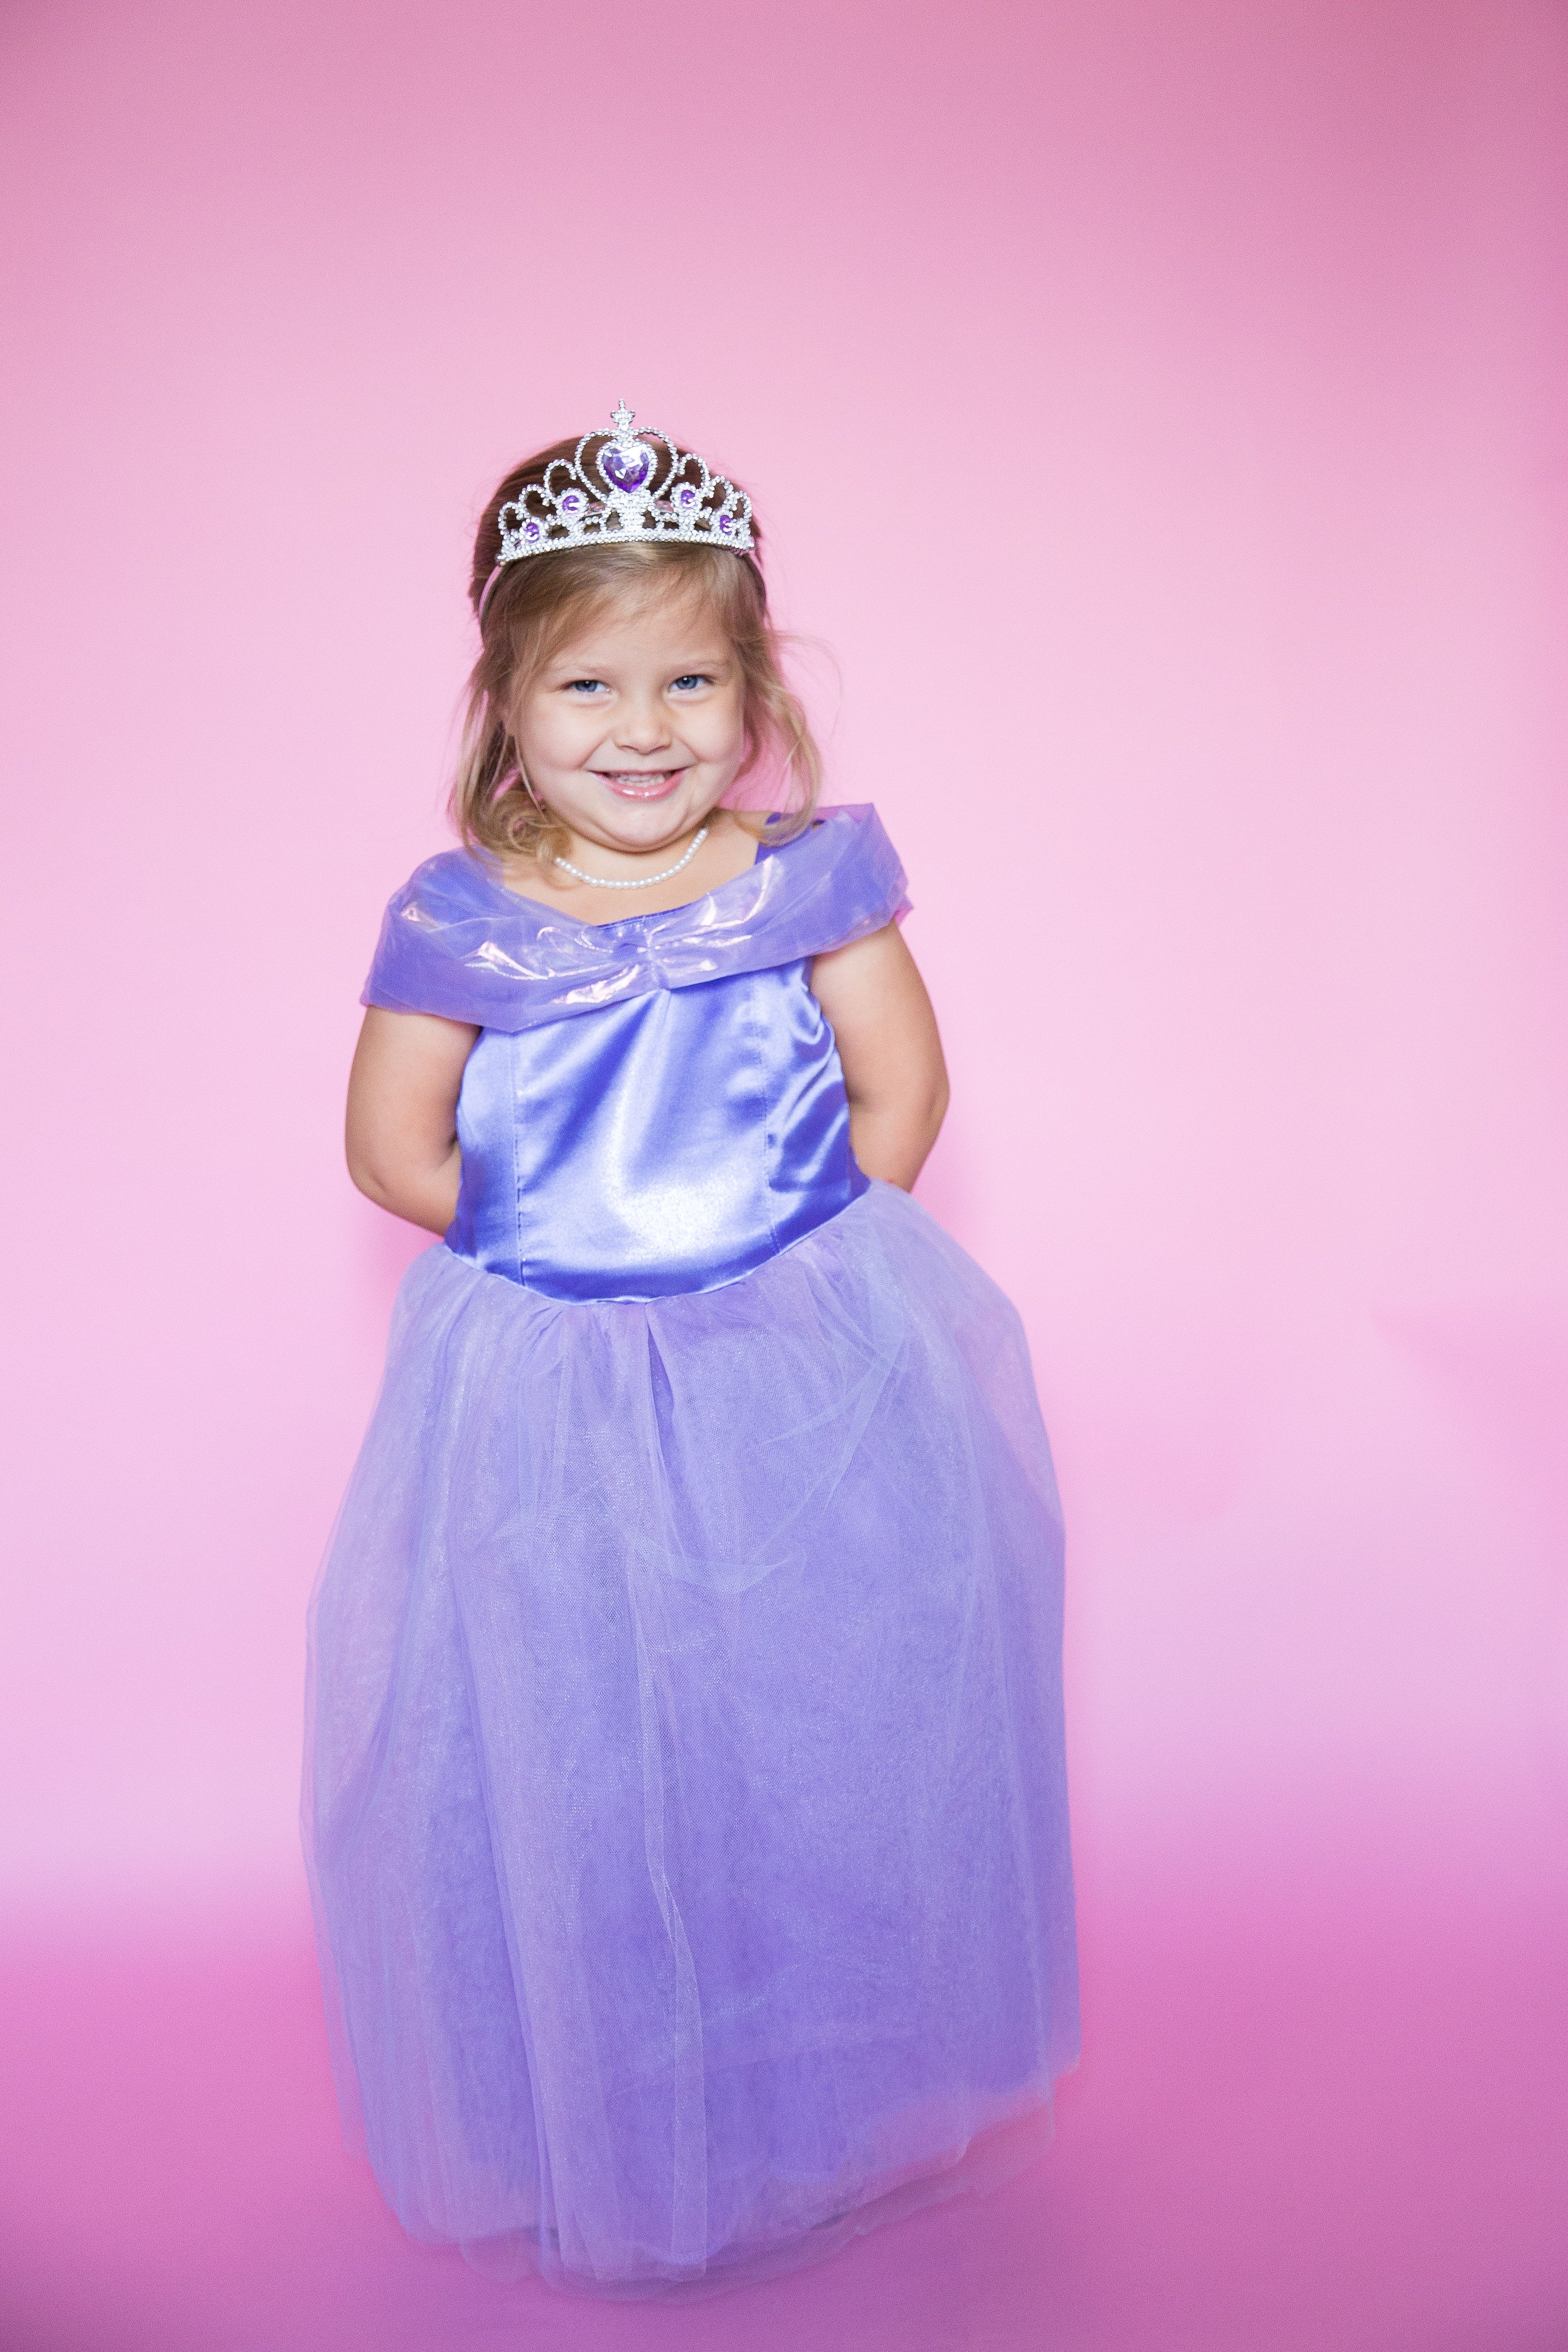 38 DIY Disney Princess Costumes 2021 - Homemade Princess Dresses